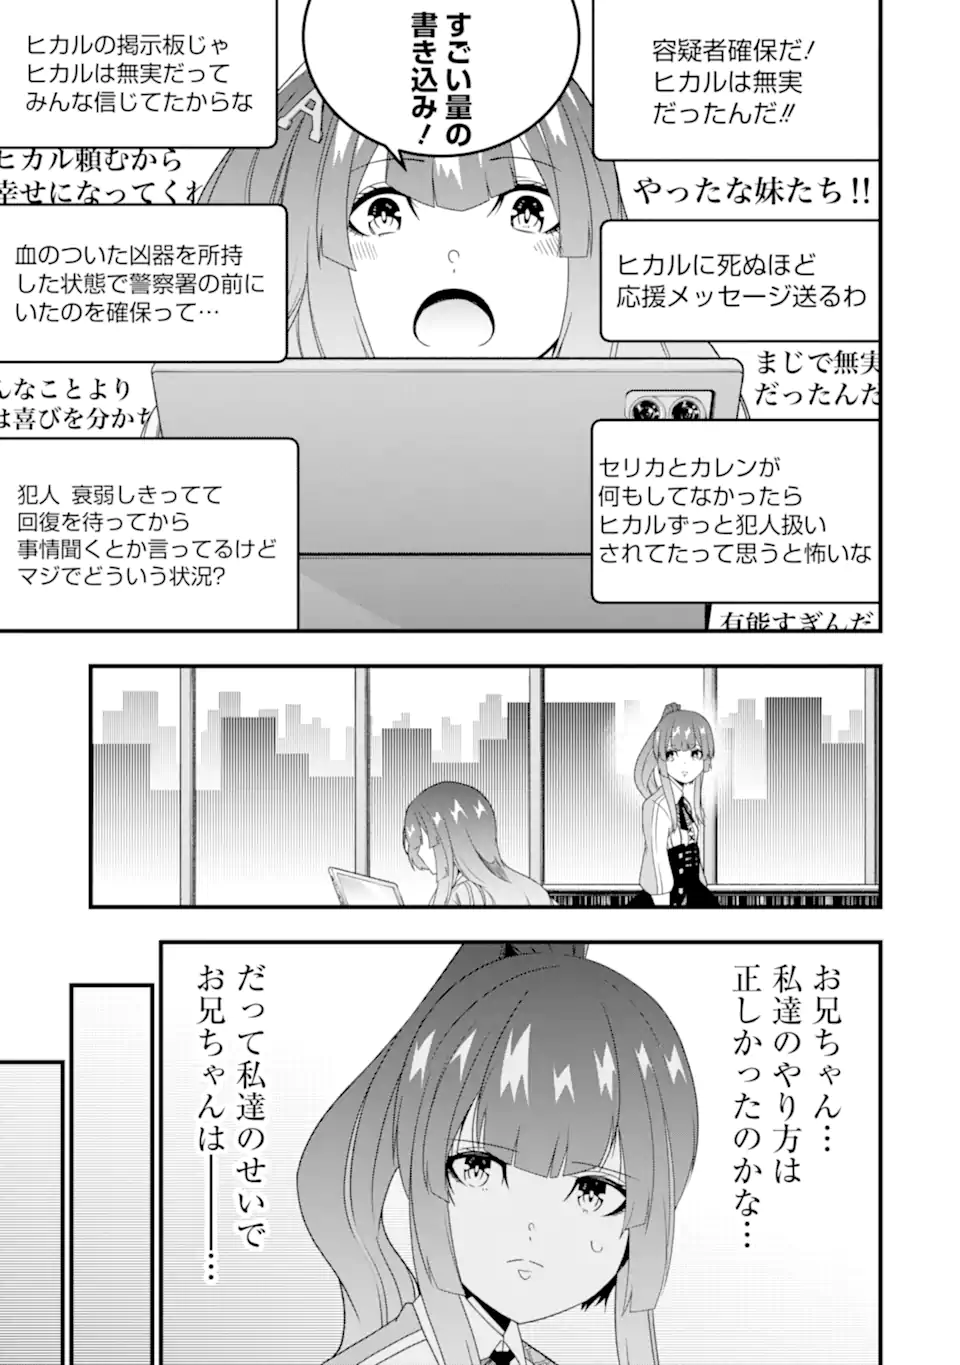 Ore ni wa Kono Kuragari ga Kokochiyokatta - Chapter 30 - Page 3